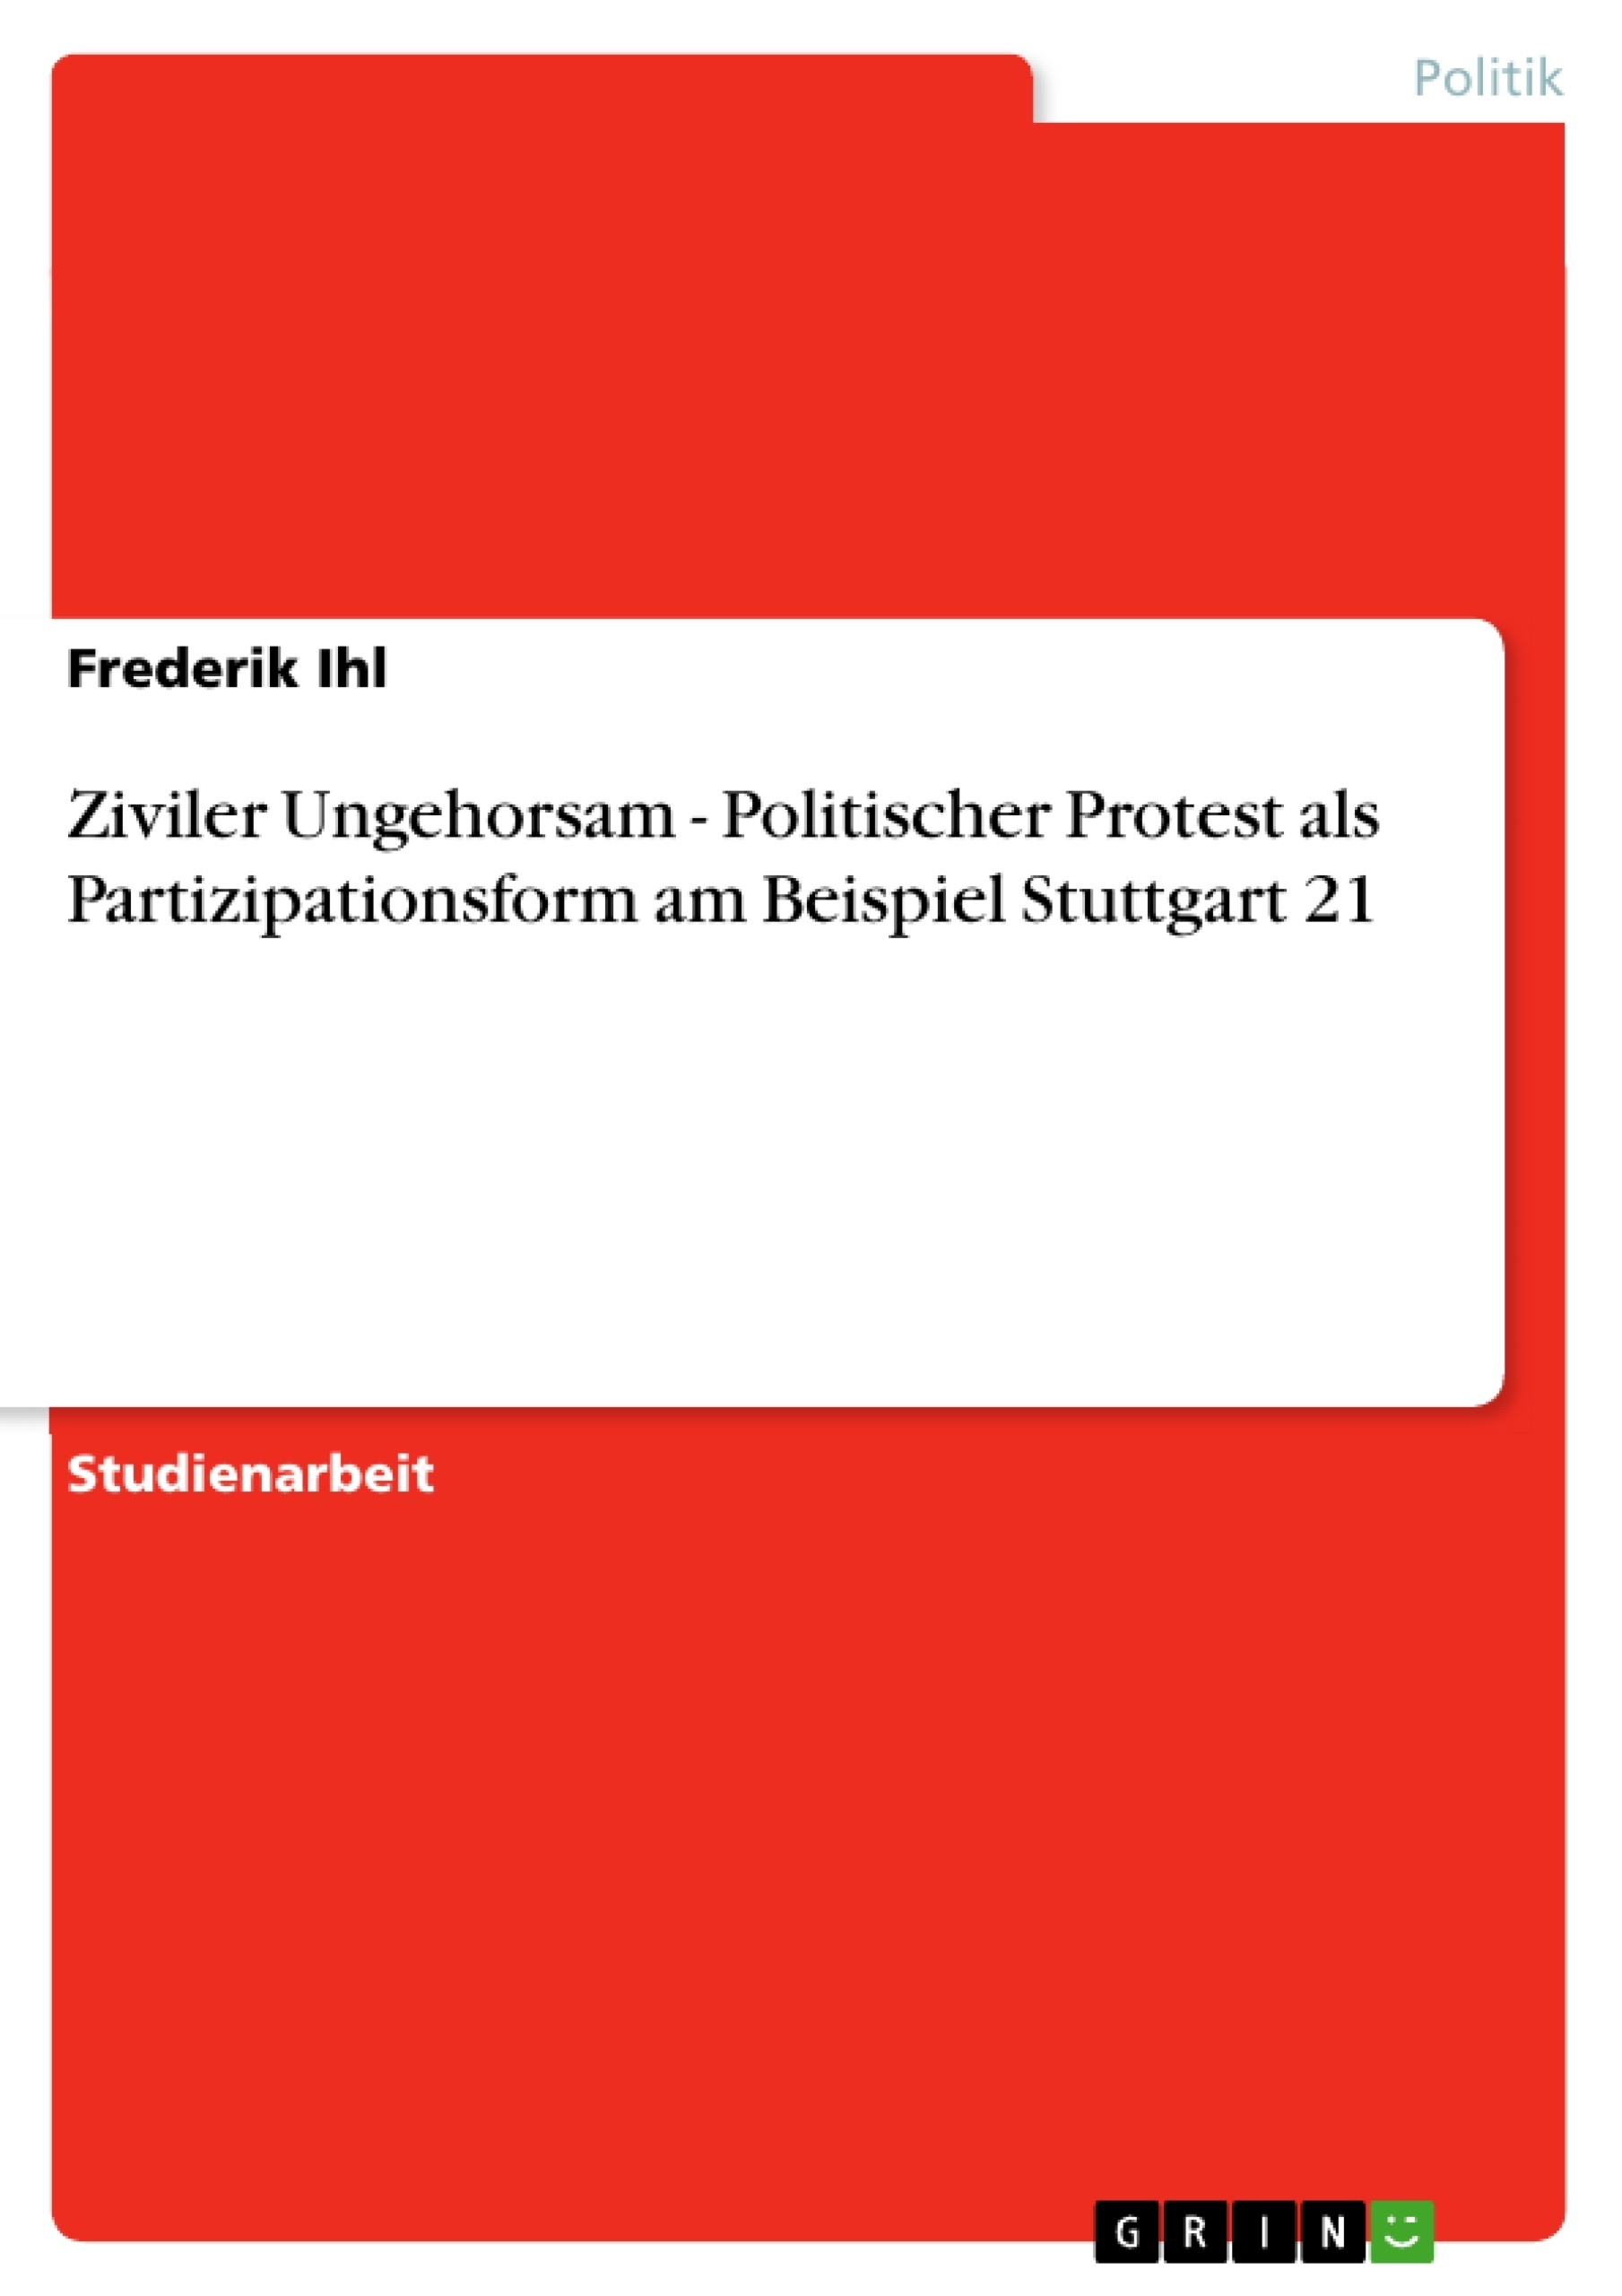 Title: Ziviler Ungehorsam - Politischer Protest als Partizipationsform am Beispiel Stuttgart 21